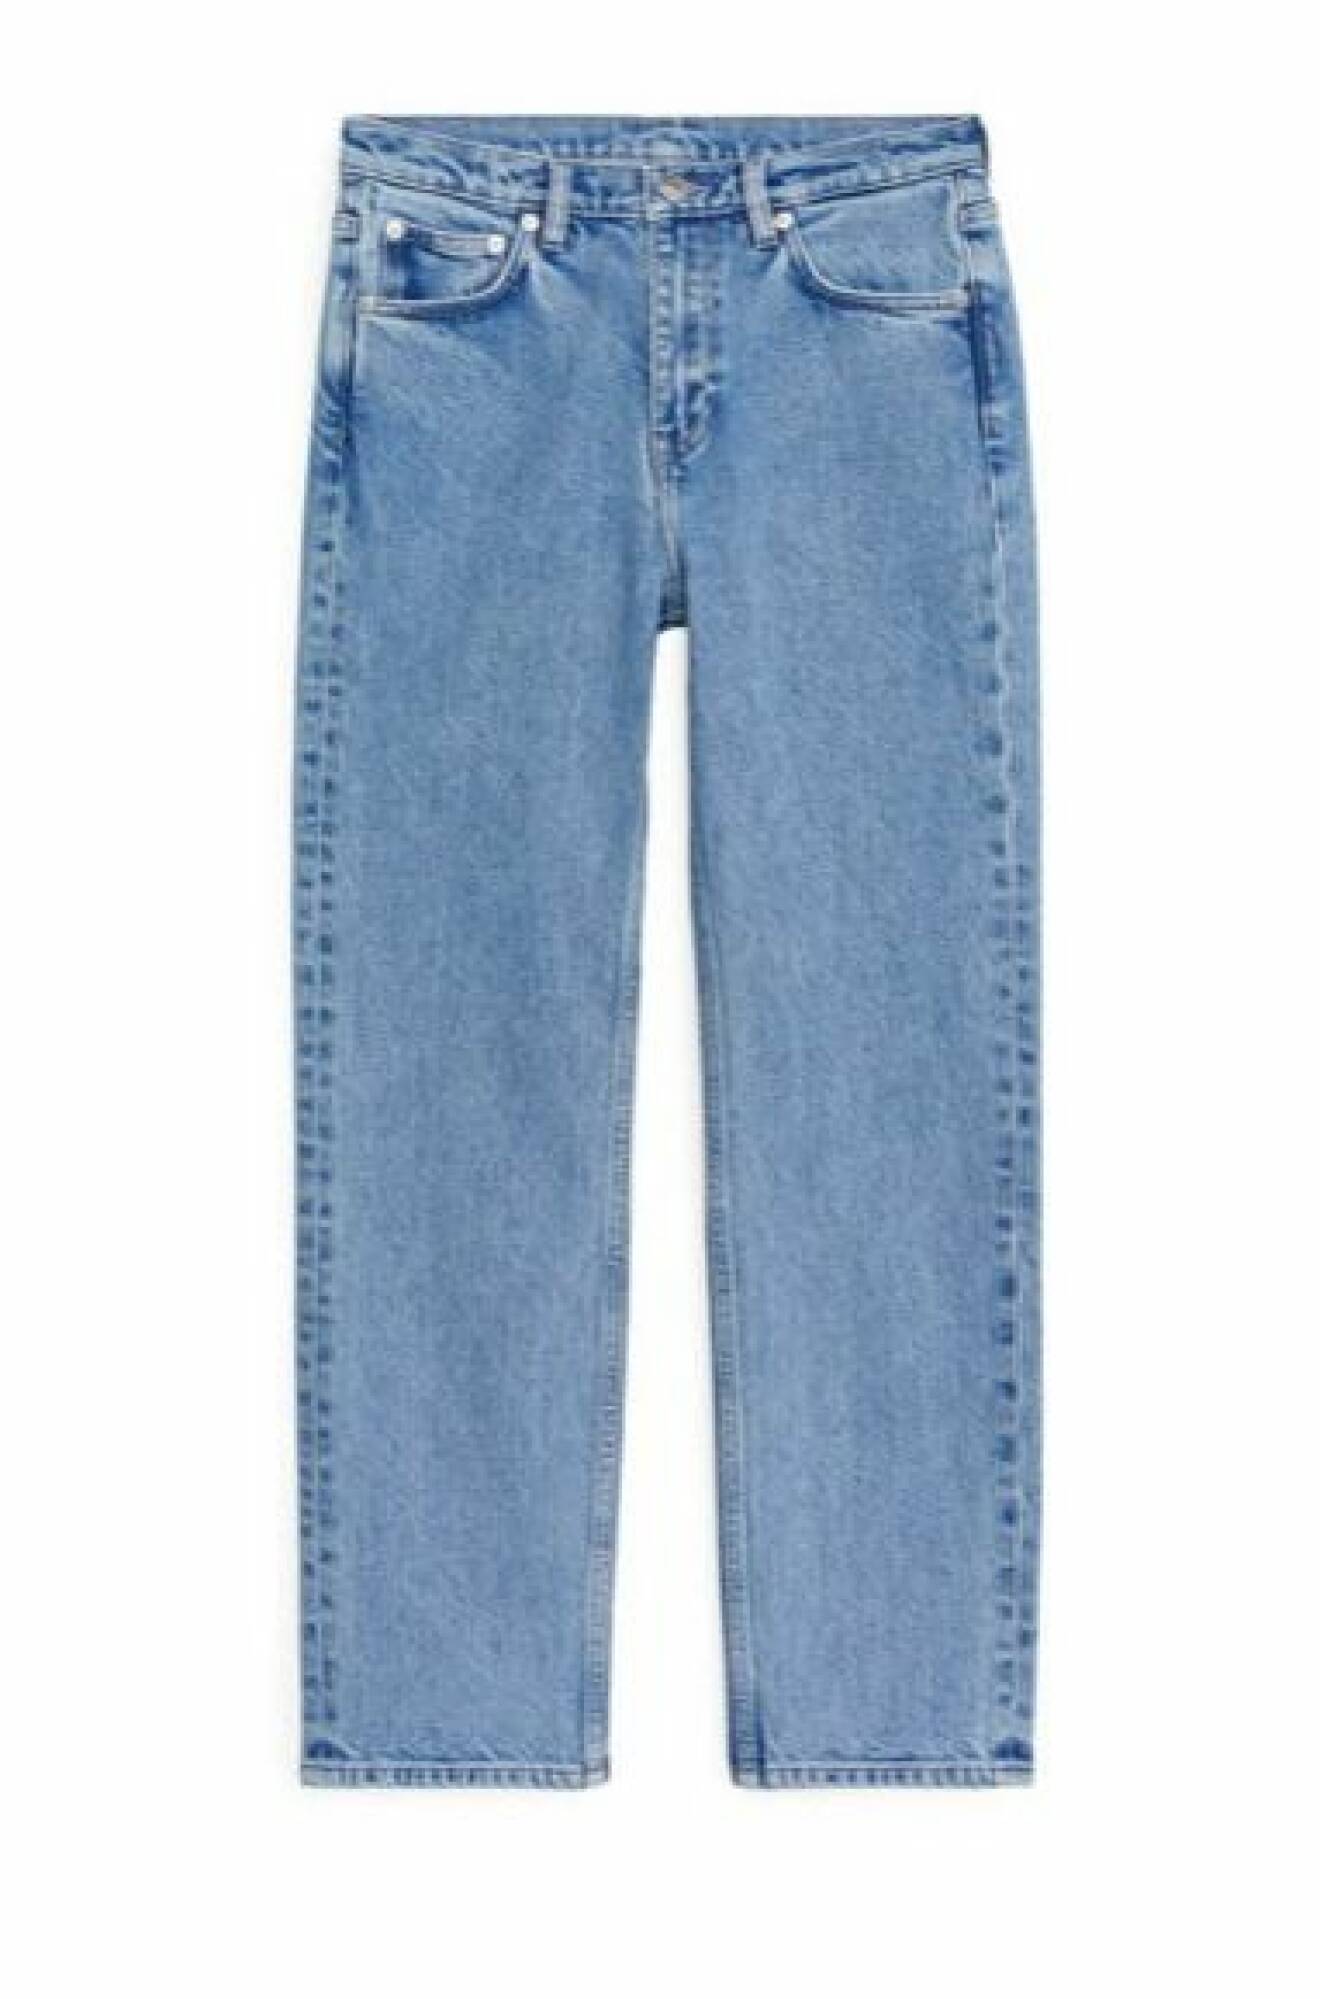 Blå, croppade jeans i rak modell. Jeans från Arket.